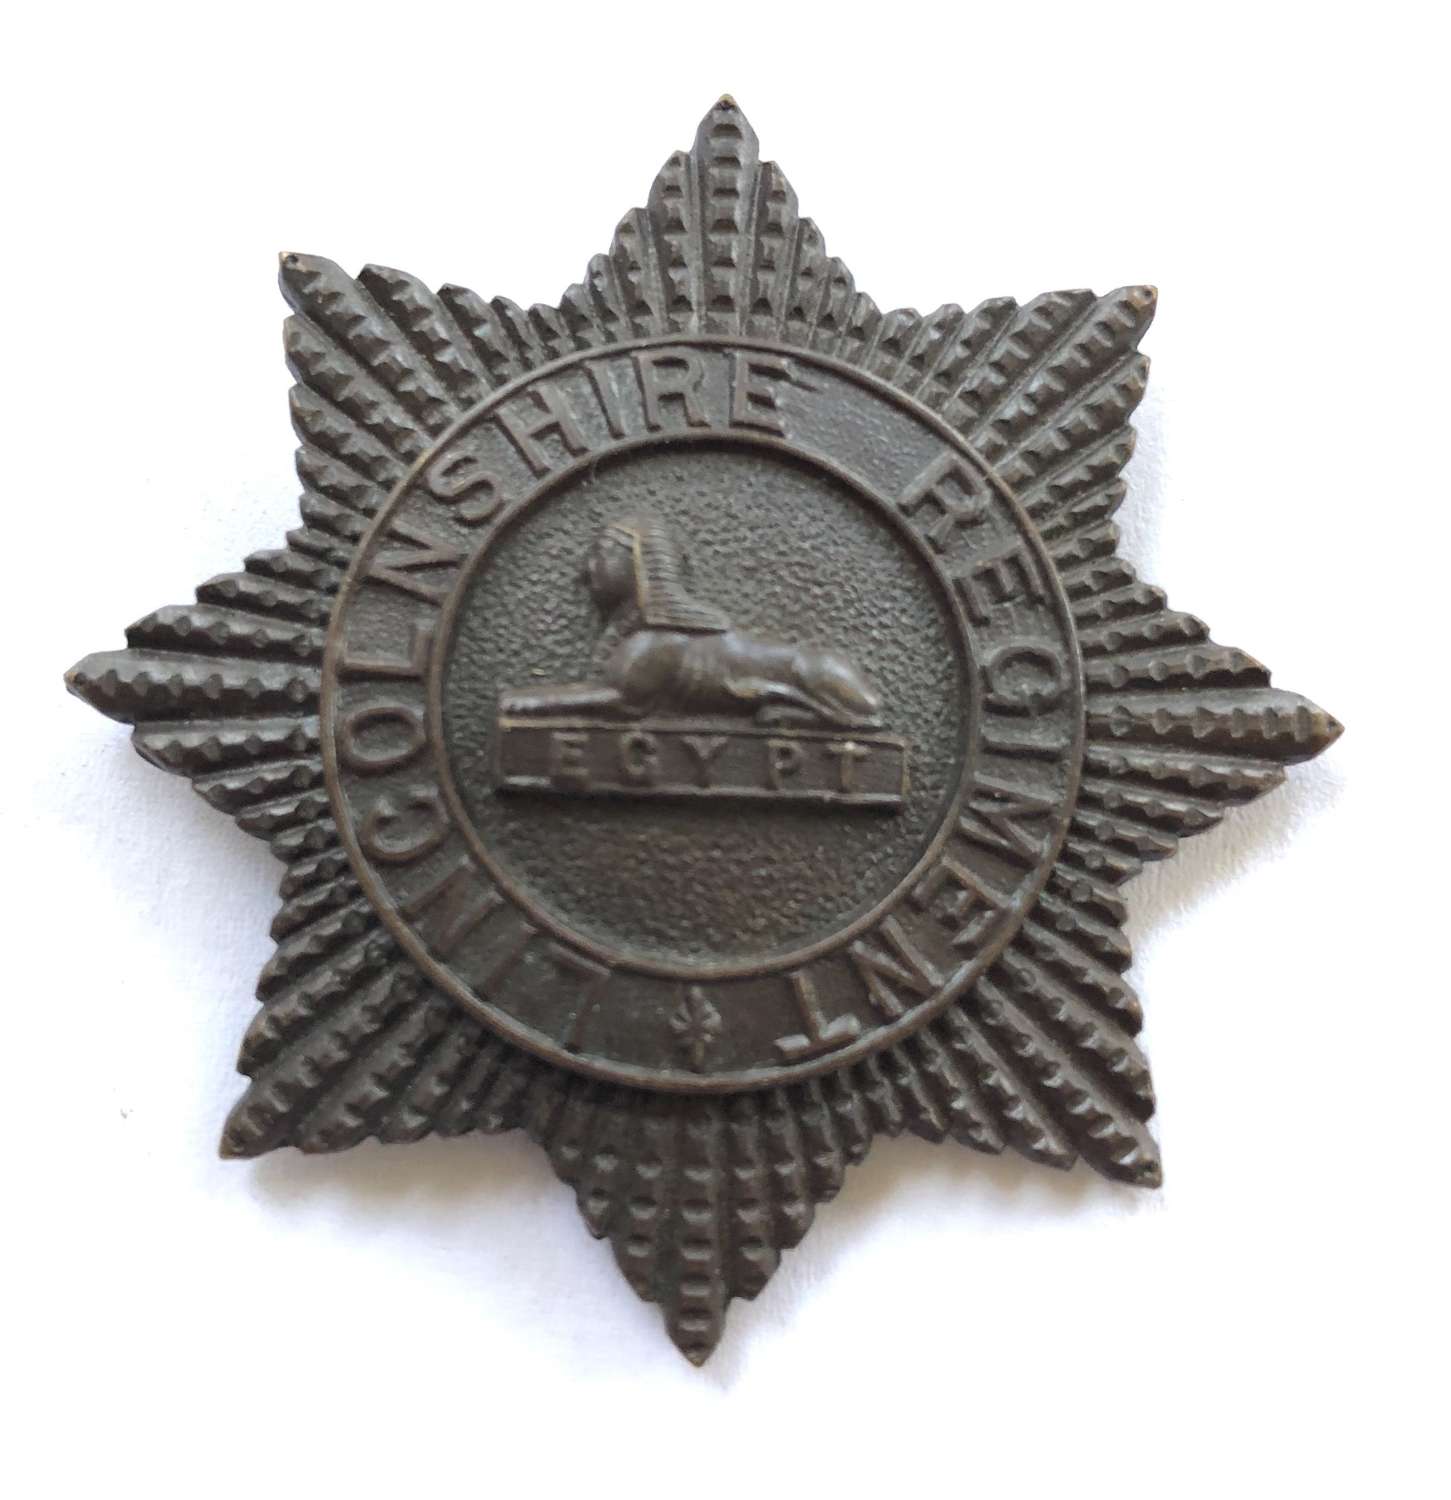 Lincolnshire Regiment OSD cap badge circa 1902-45